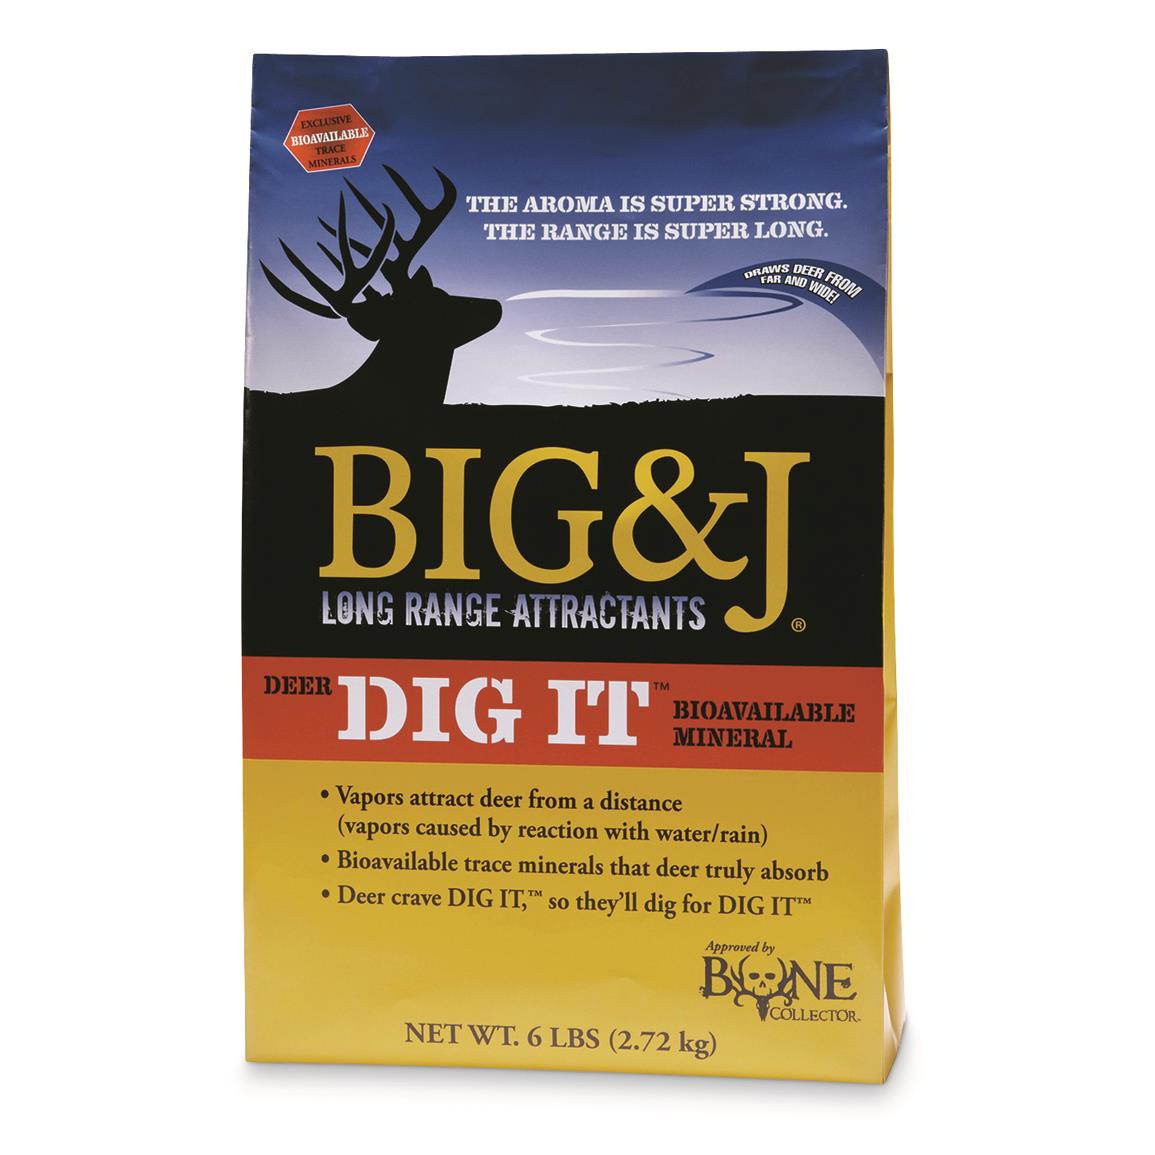 Big & J Deer DIG IT Powder Attractant, 6 lb. Bag